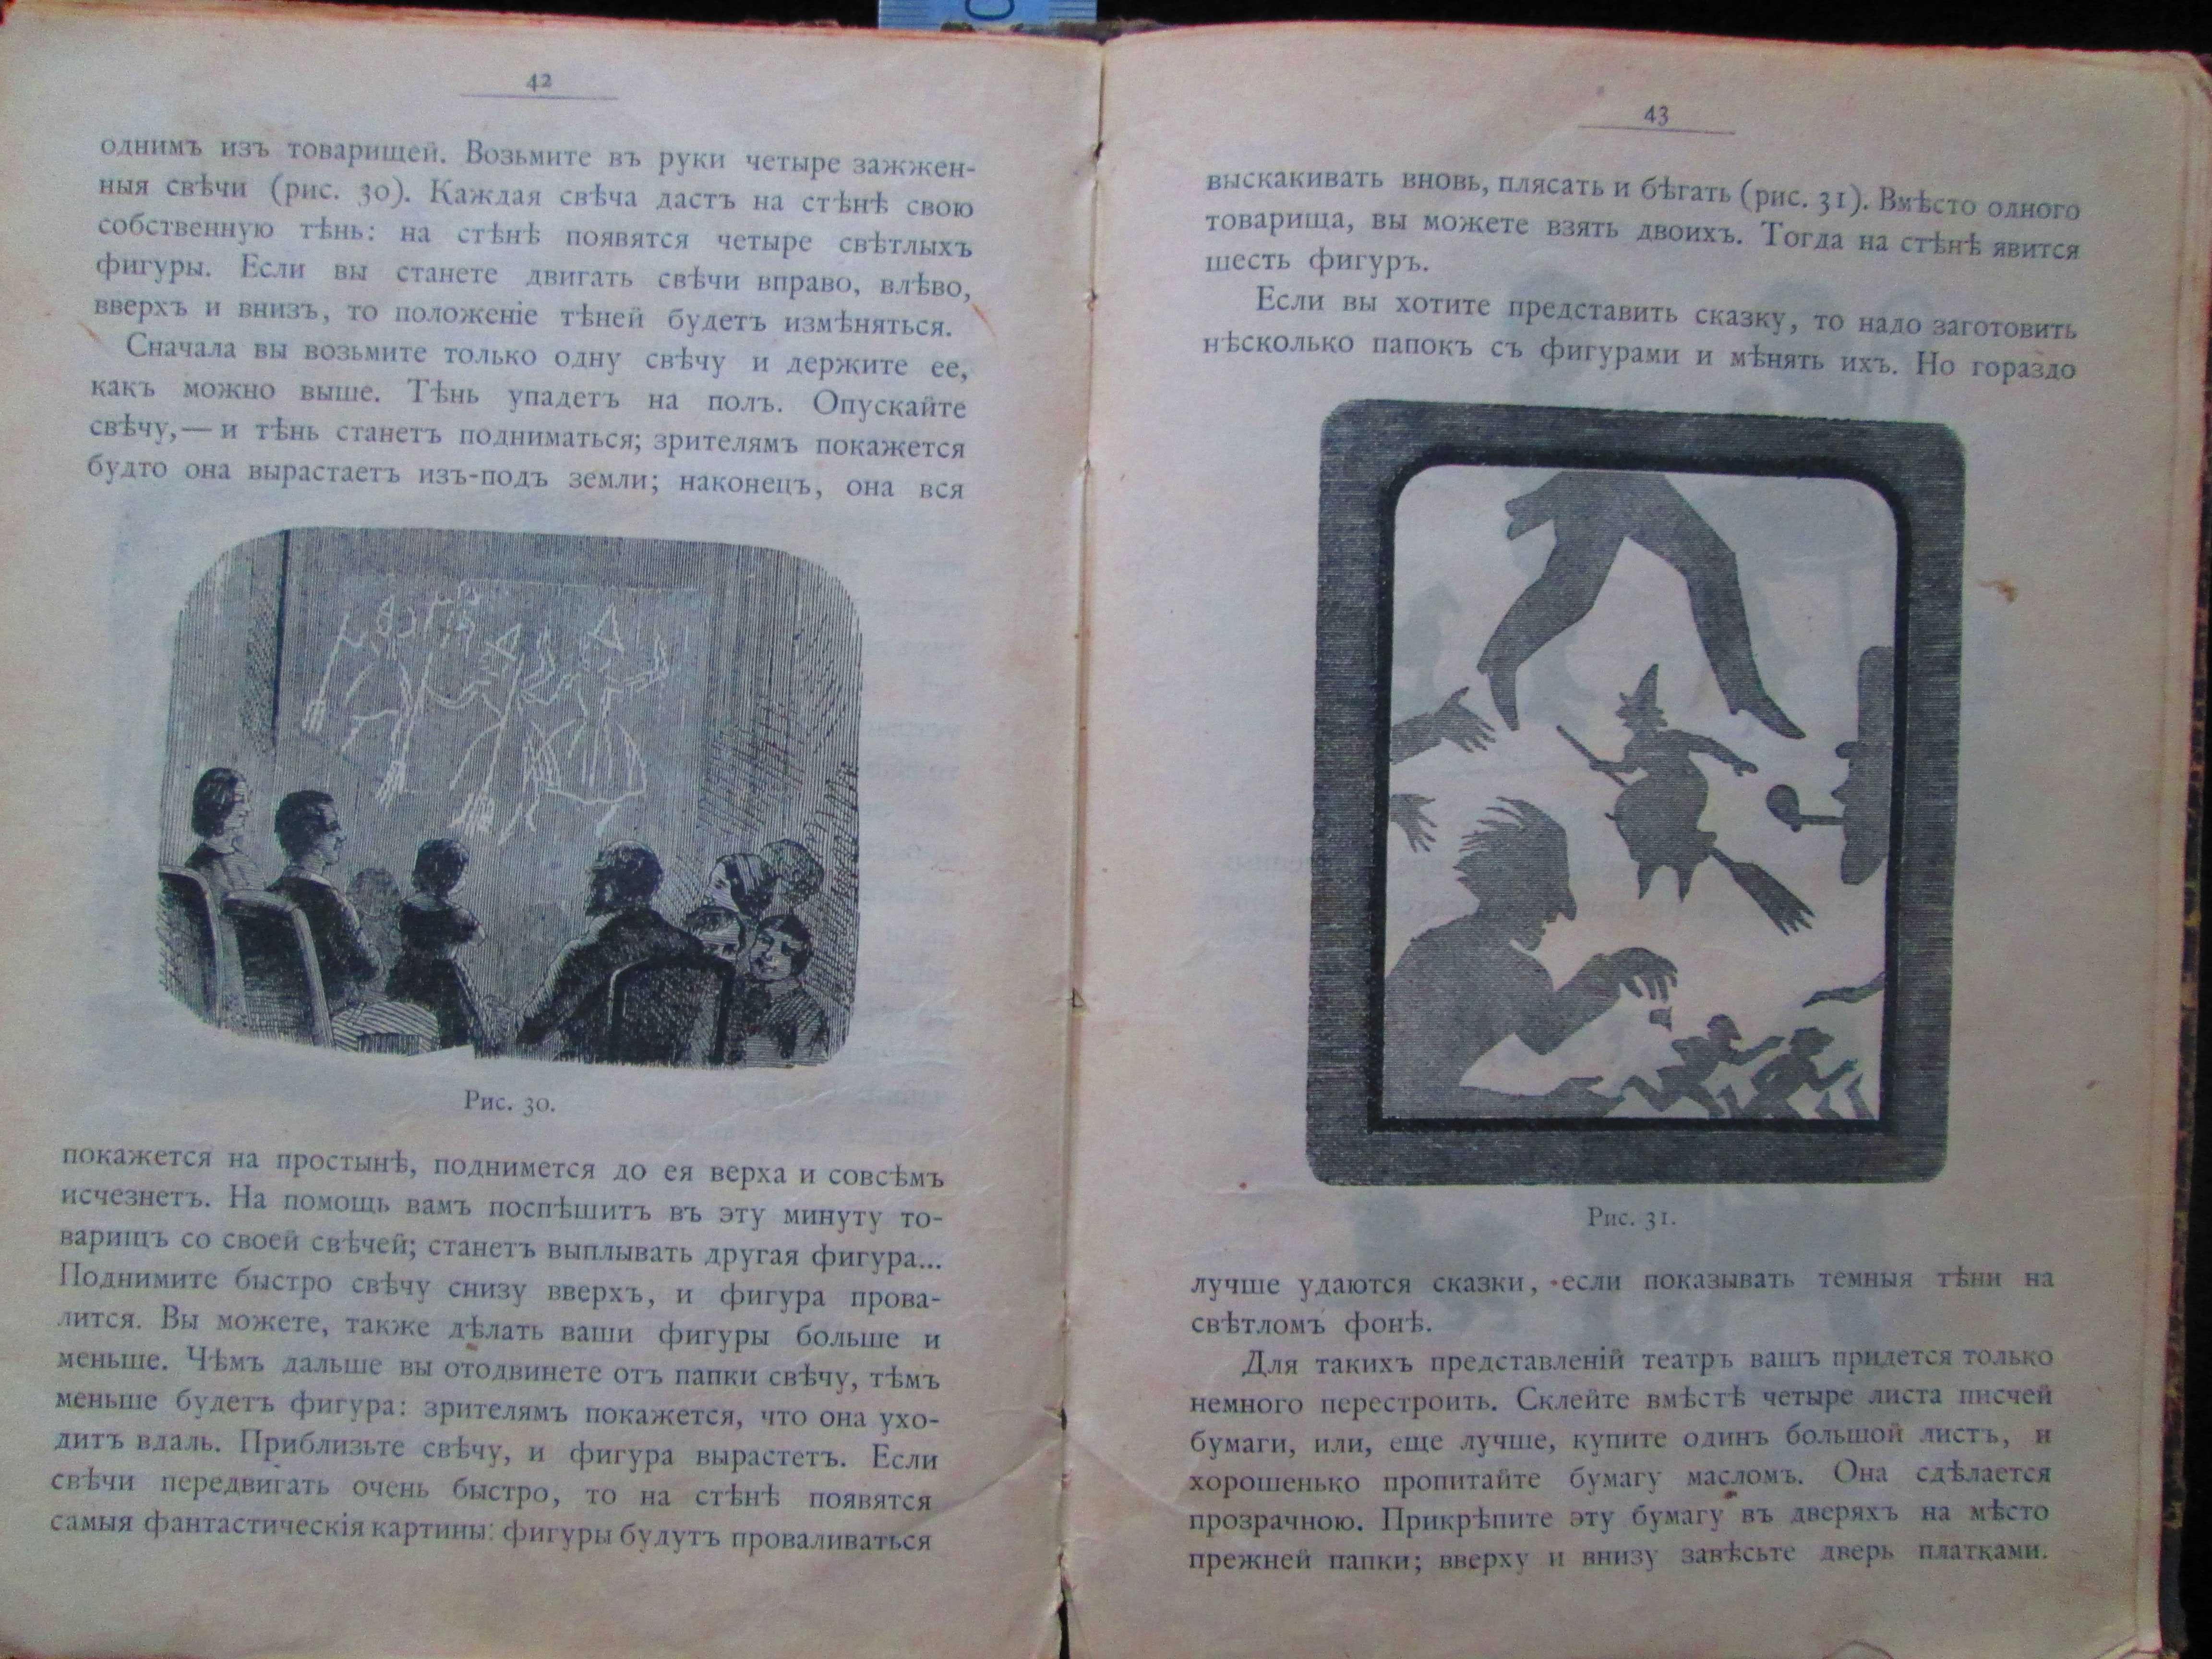 Книга 1897 года "Чудеса без чудес" Нечаев Александр Петрович